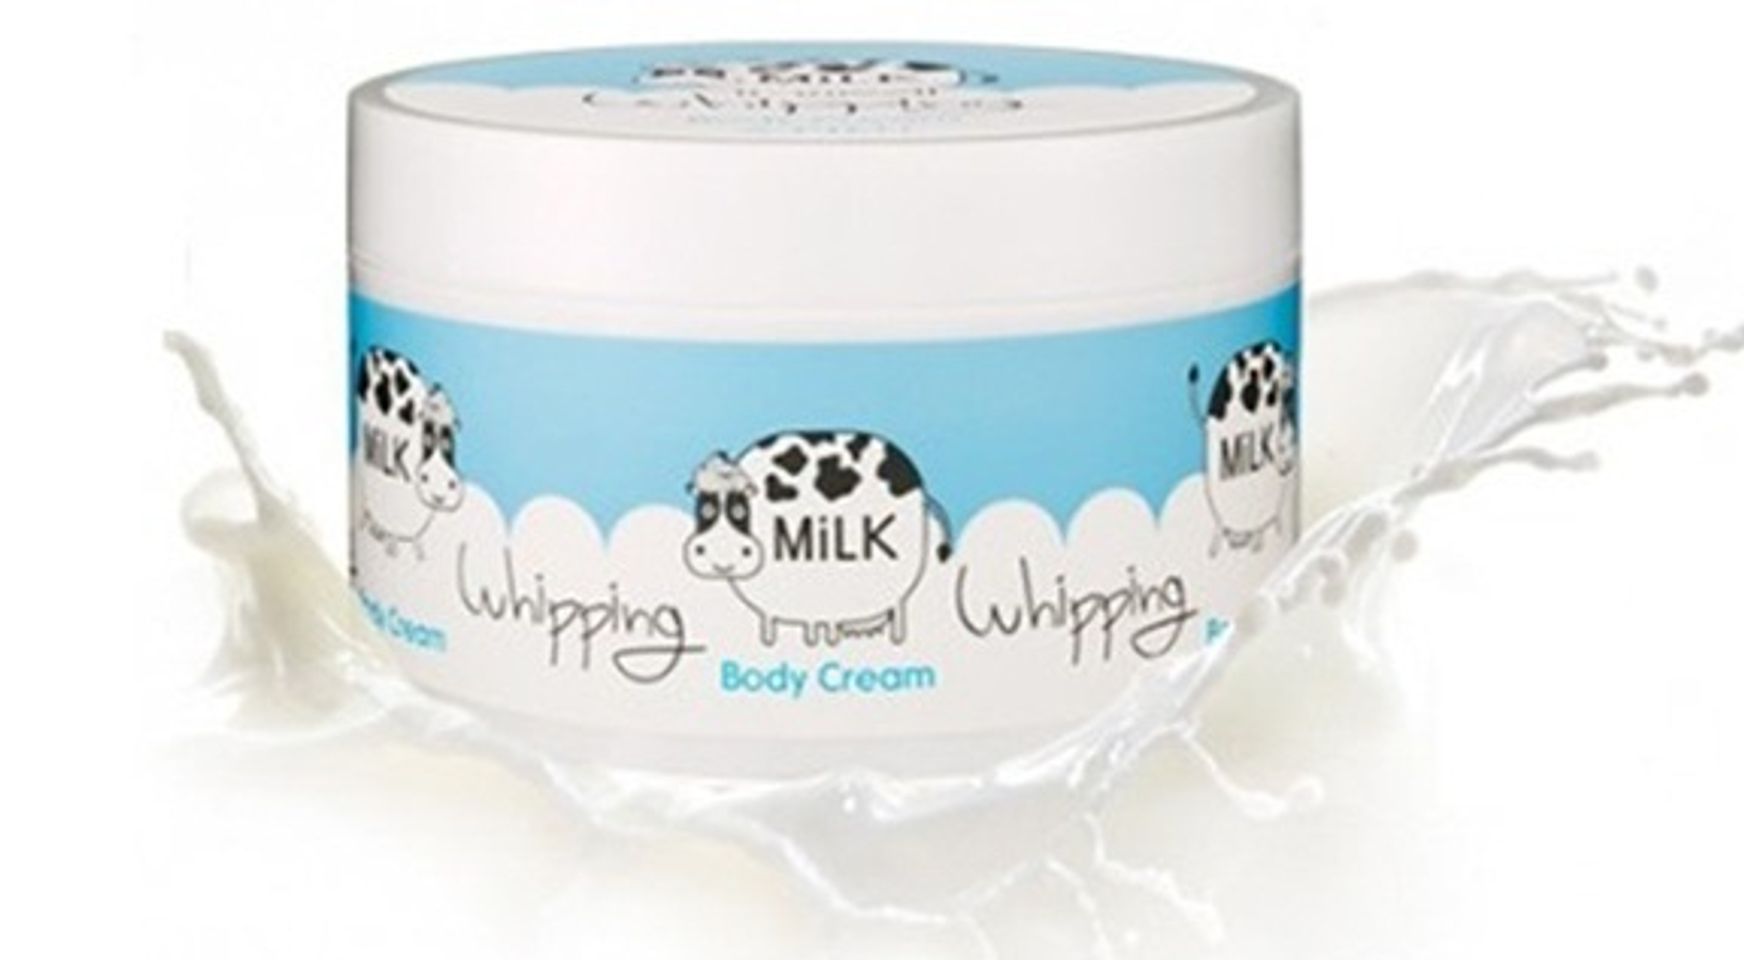 Kem dưỡng trắng da Milk Whipping Body Cream A’pieu Hàn Quốc chứa thành phần protein Sữa làm trắng da hiệu quả